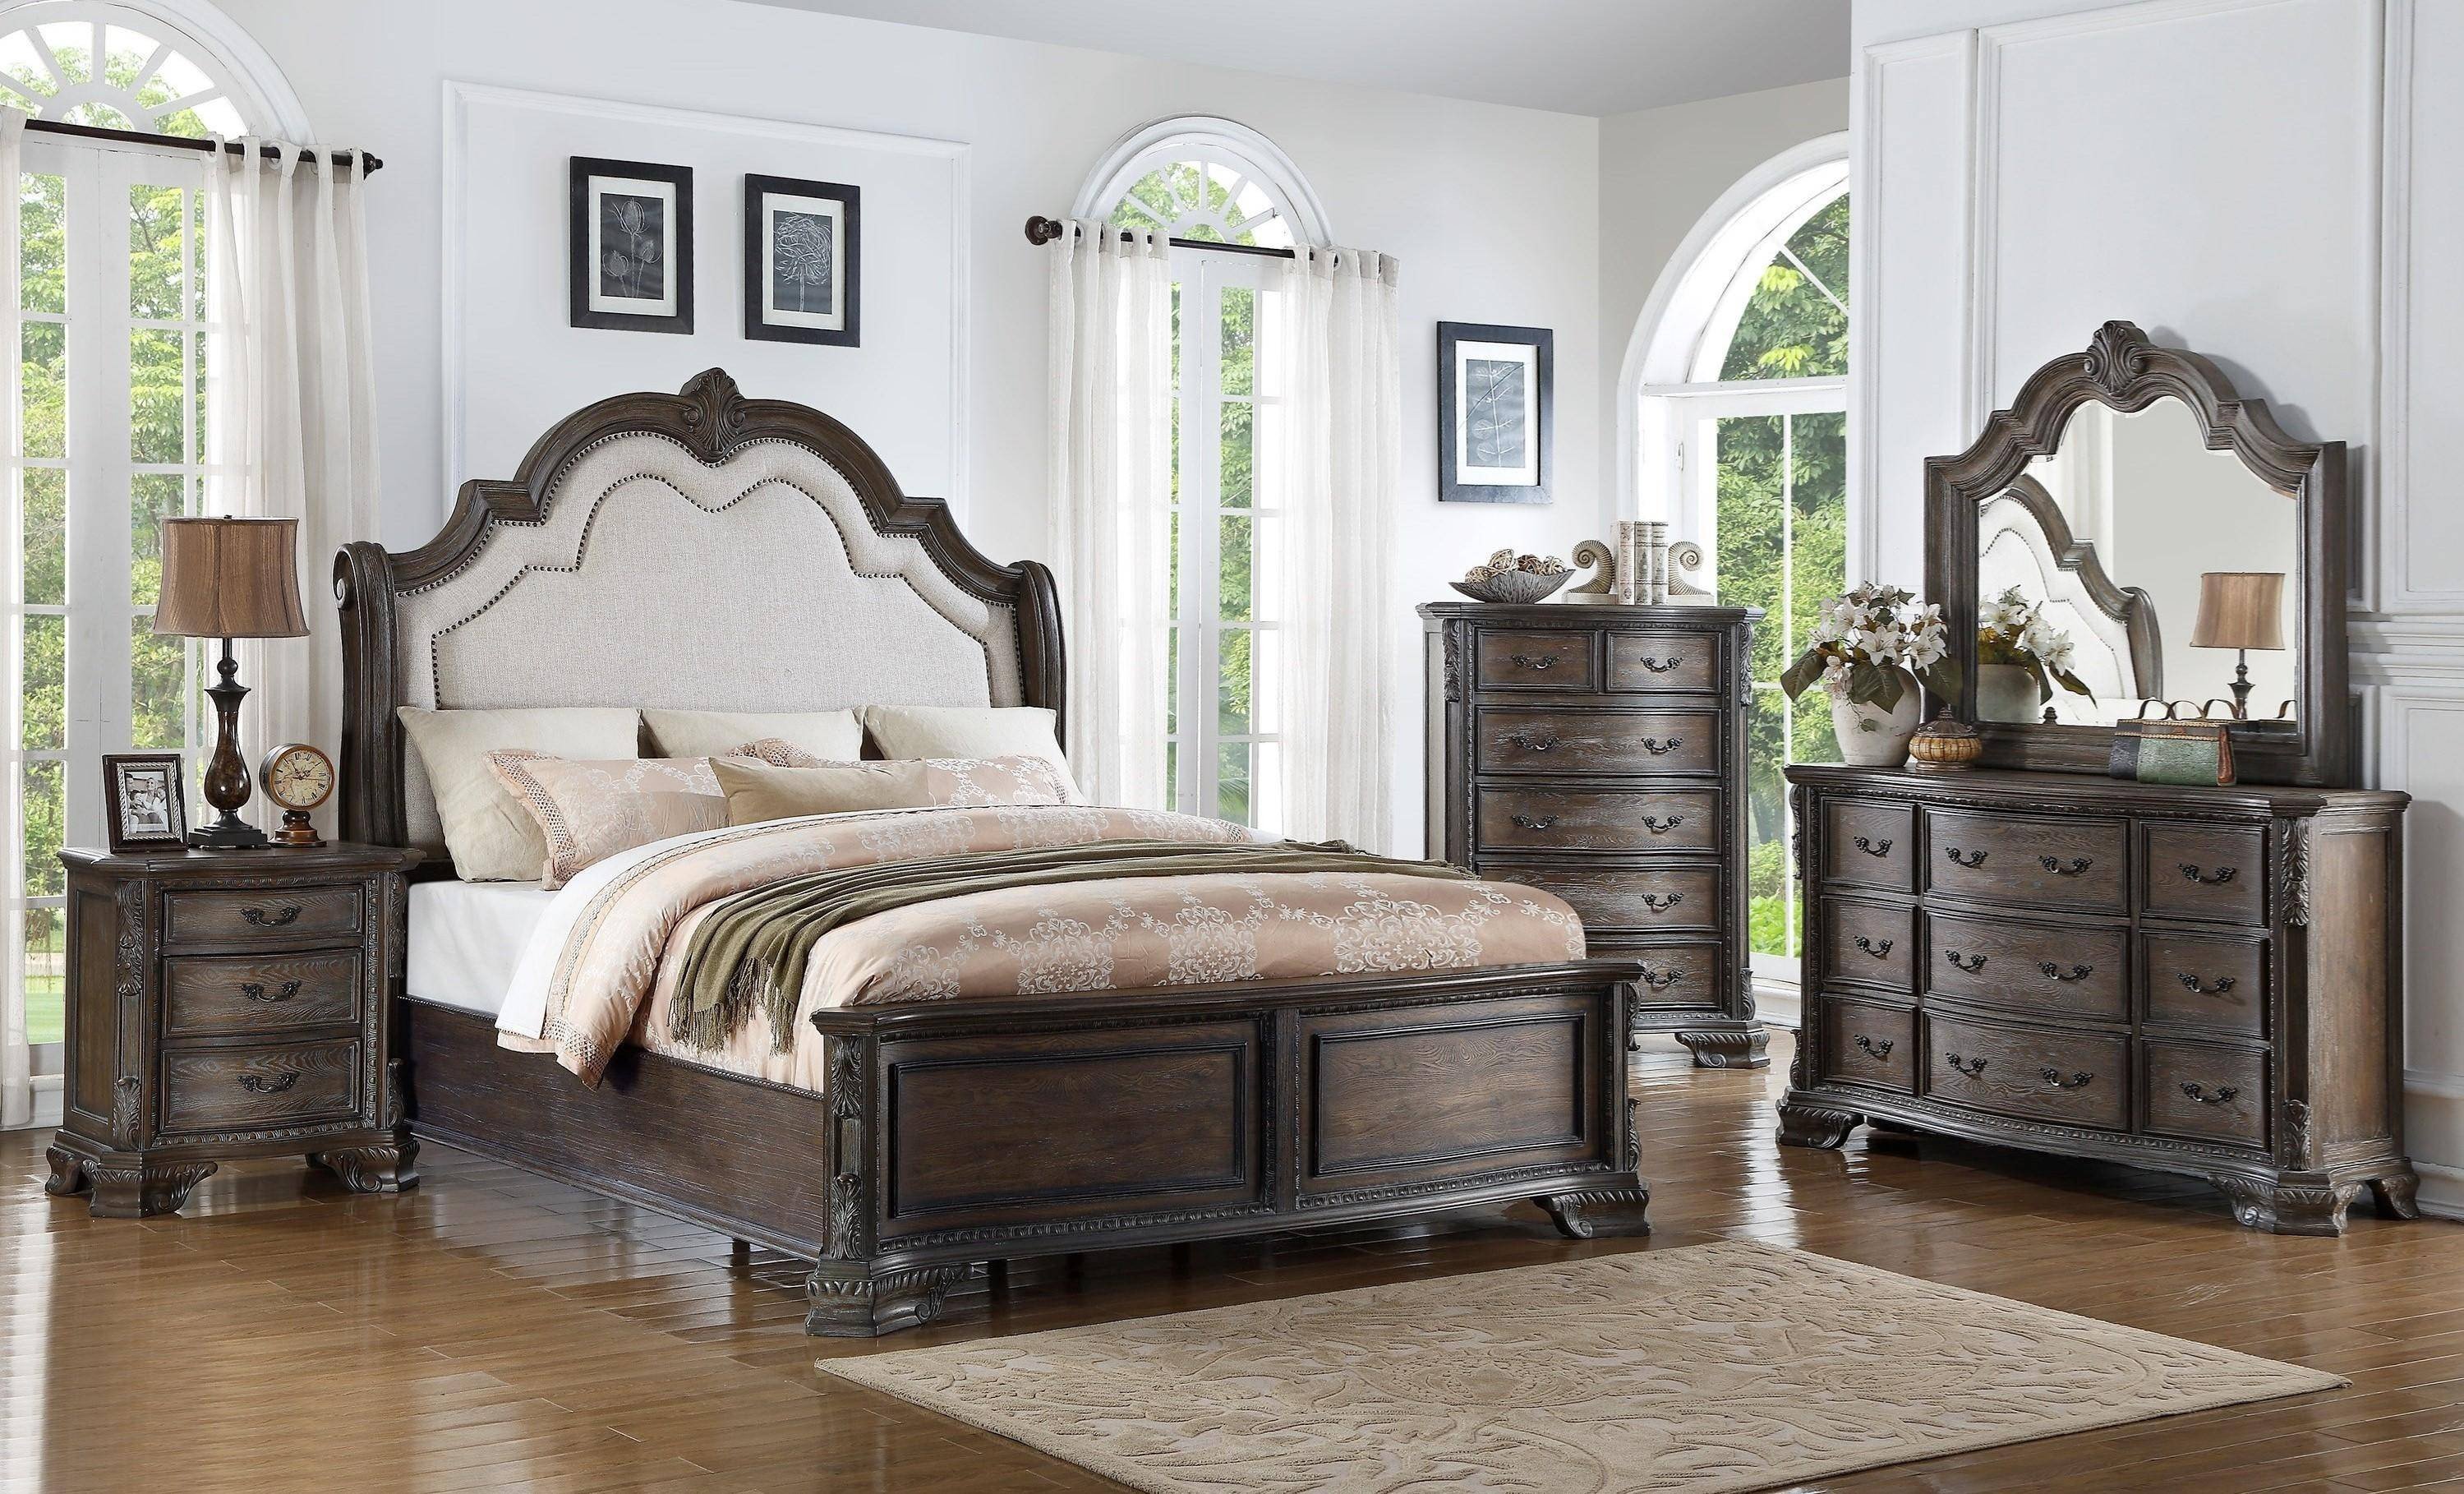 cheap king bedroom furniture set under 200